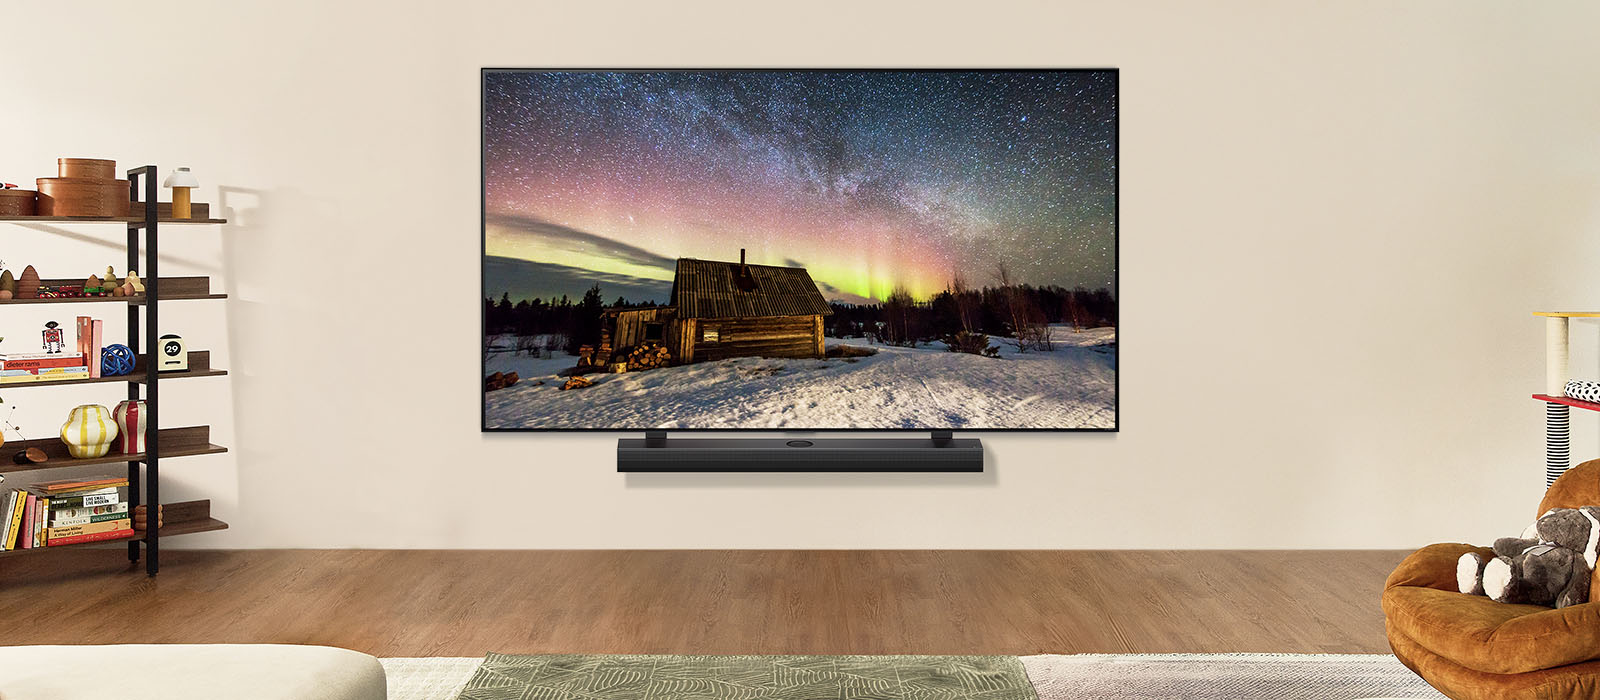 Televisor LG y LG Soundbar en un salón moderno durante el día. Se muestra en la pantalla la imagen de la aurora boreal con los niveles de brillo ideales.